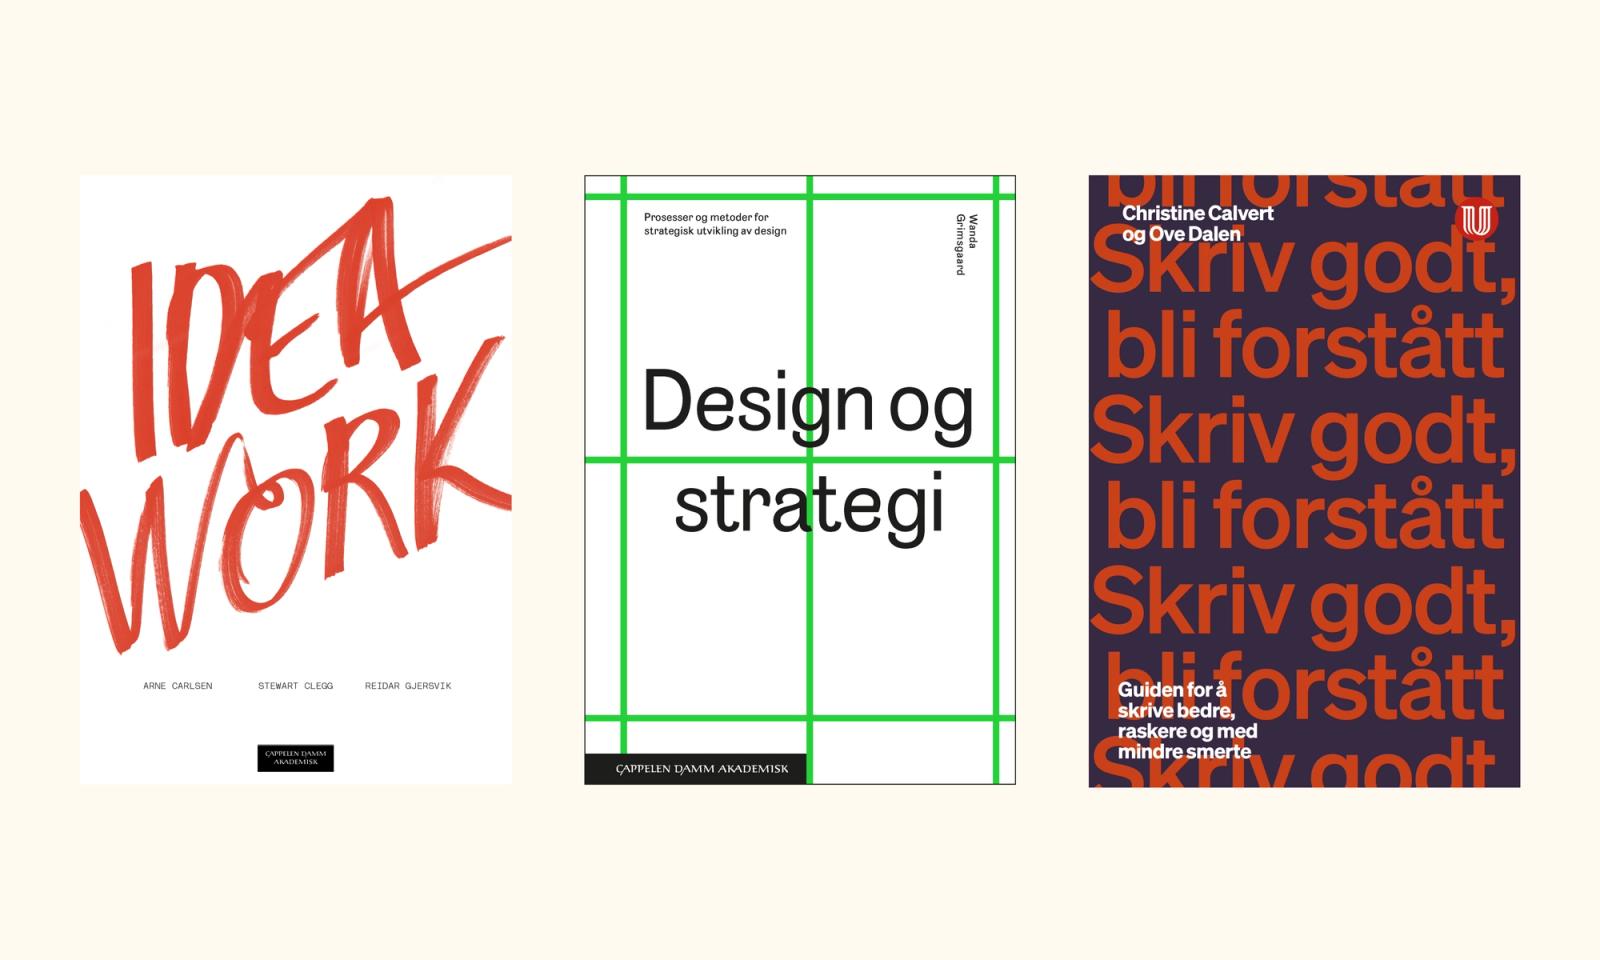 Omslag for bøkene "Idea work", "Design og strategi" og "Skriv godt, bli forstått#